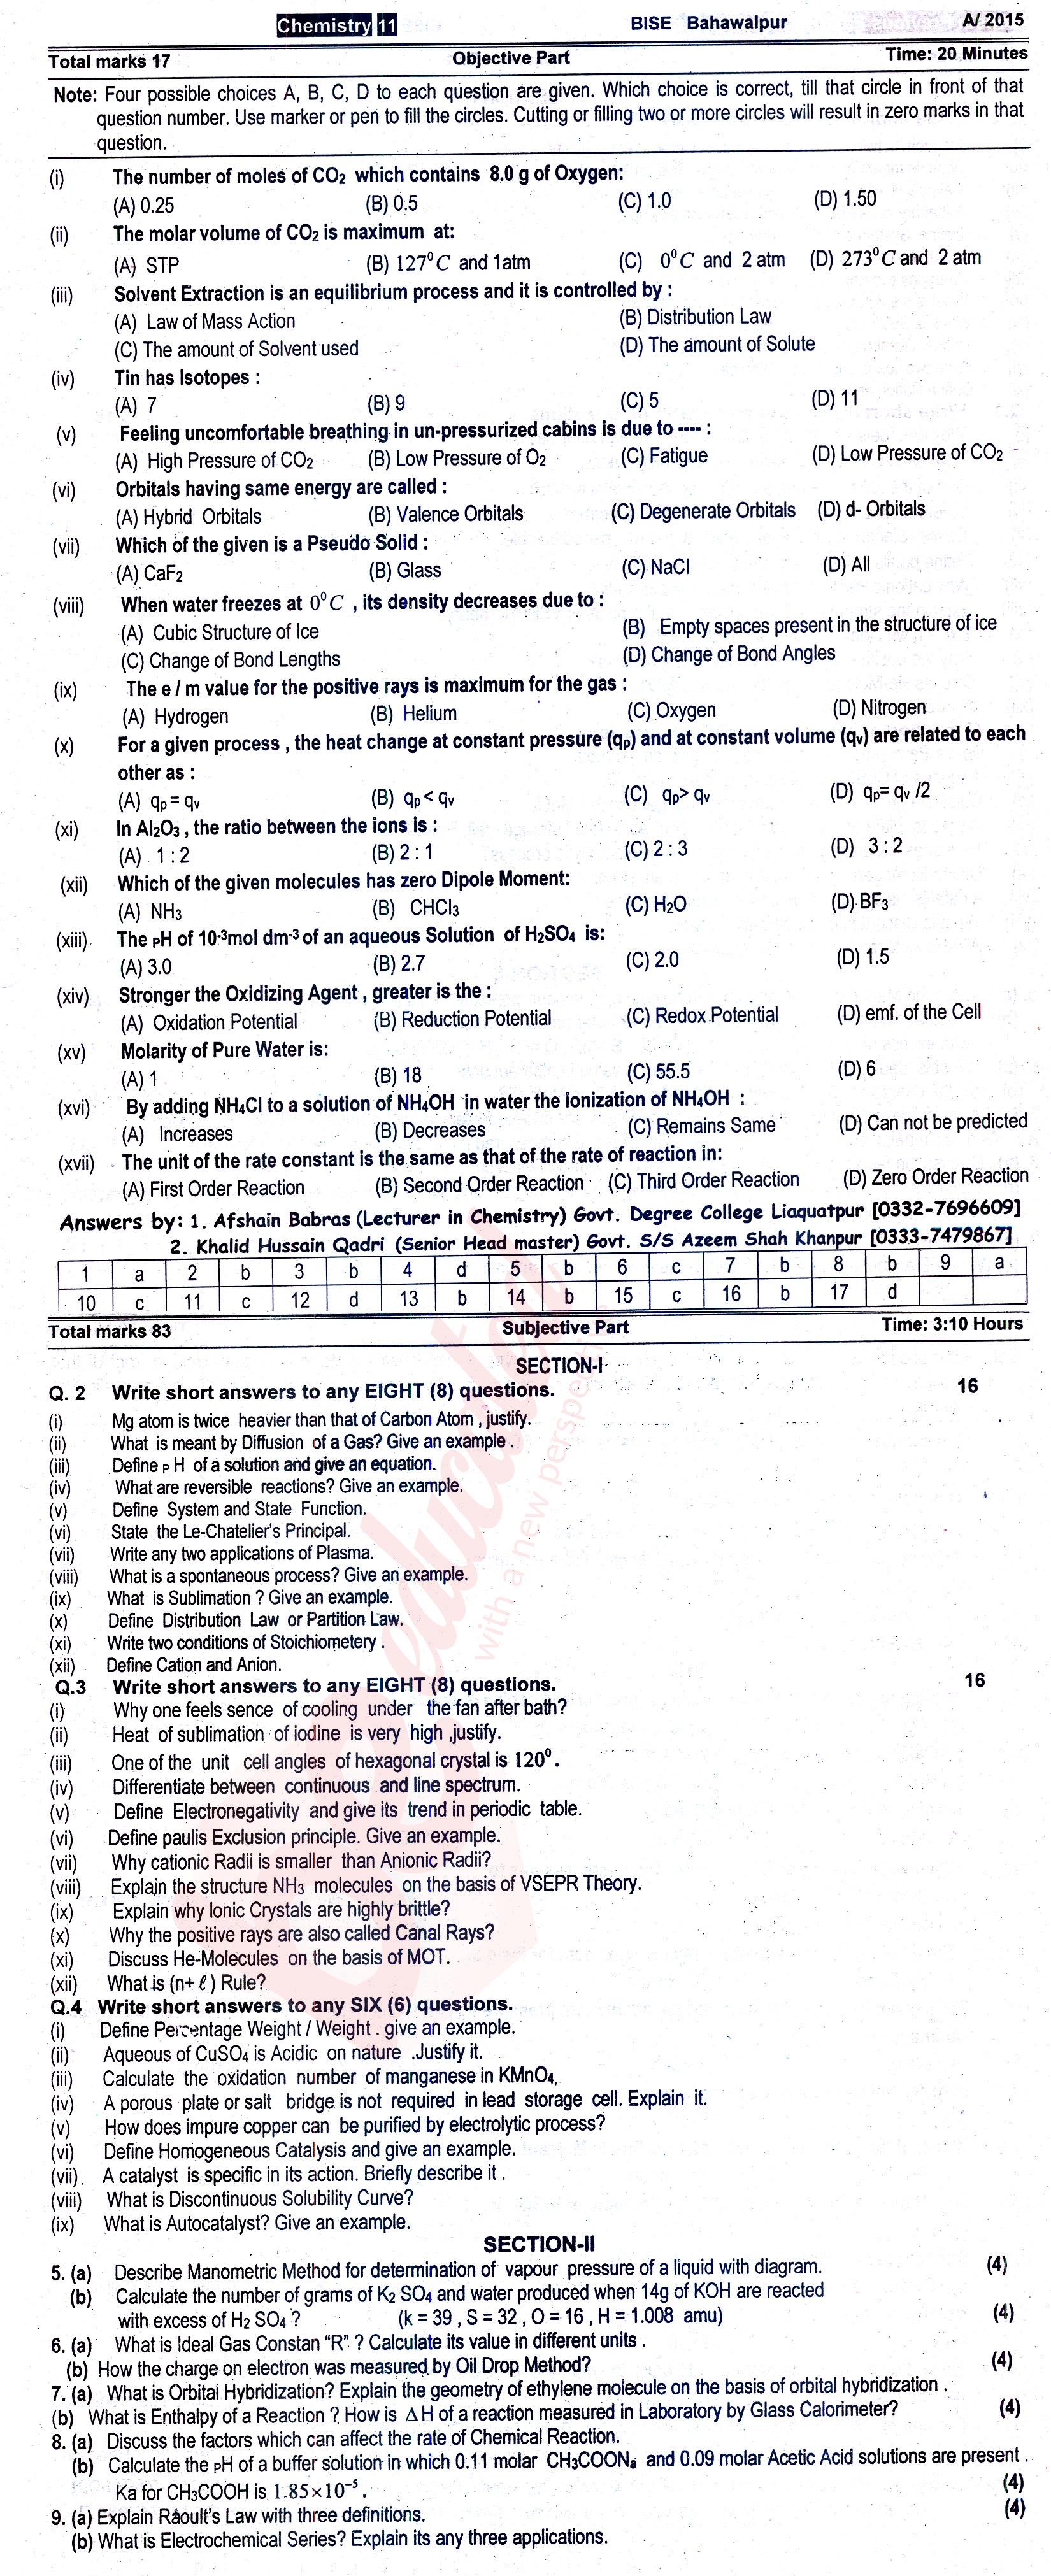 Chemistry FSC Part 1 Past Paper Group 1 BISE Bahawalpur 2015